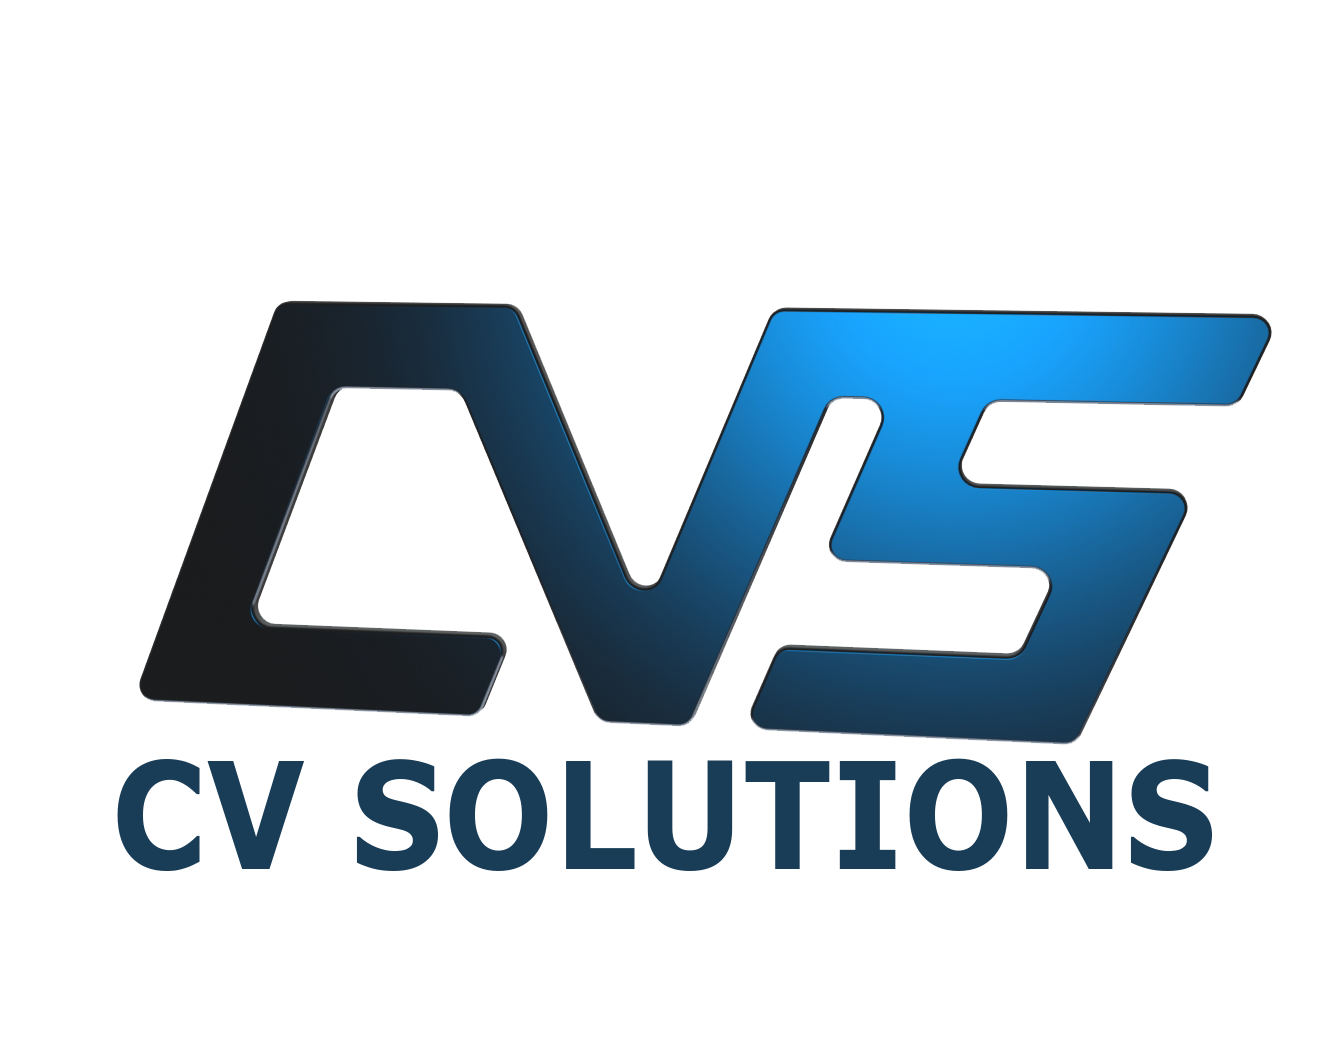 CV Solutions